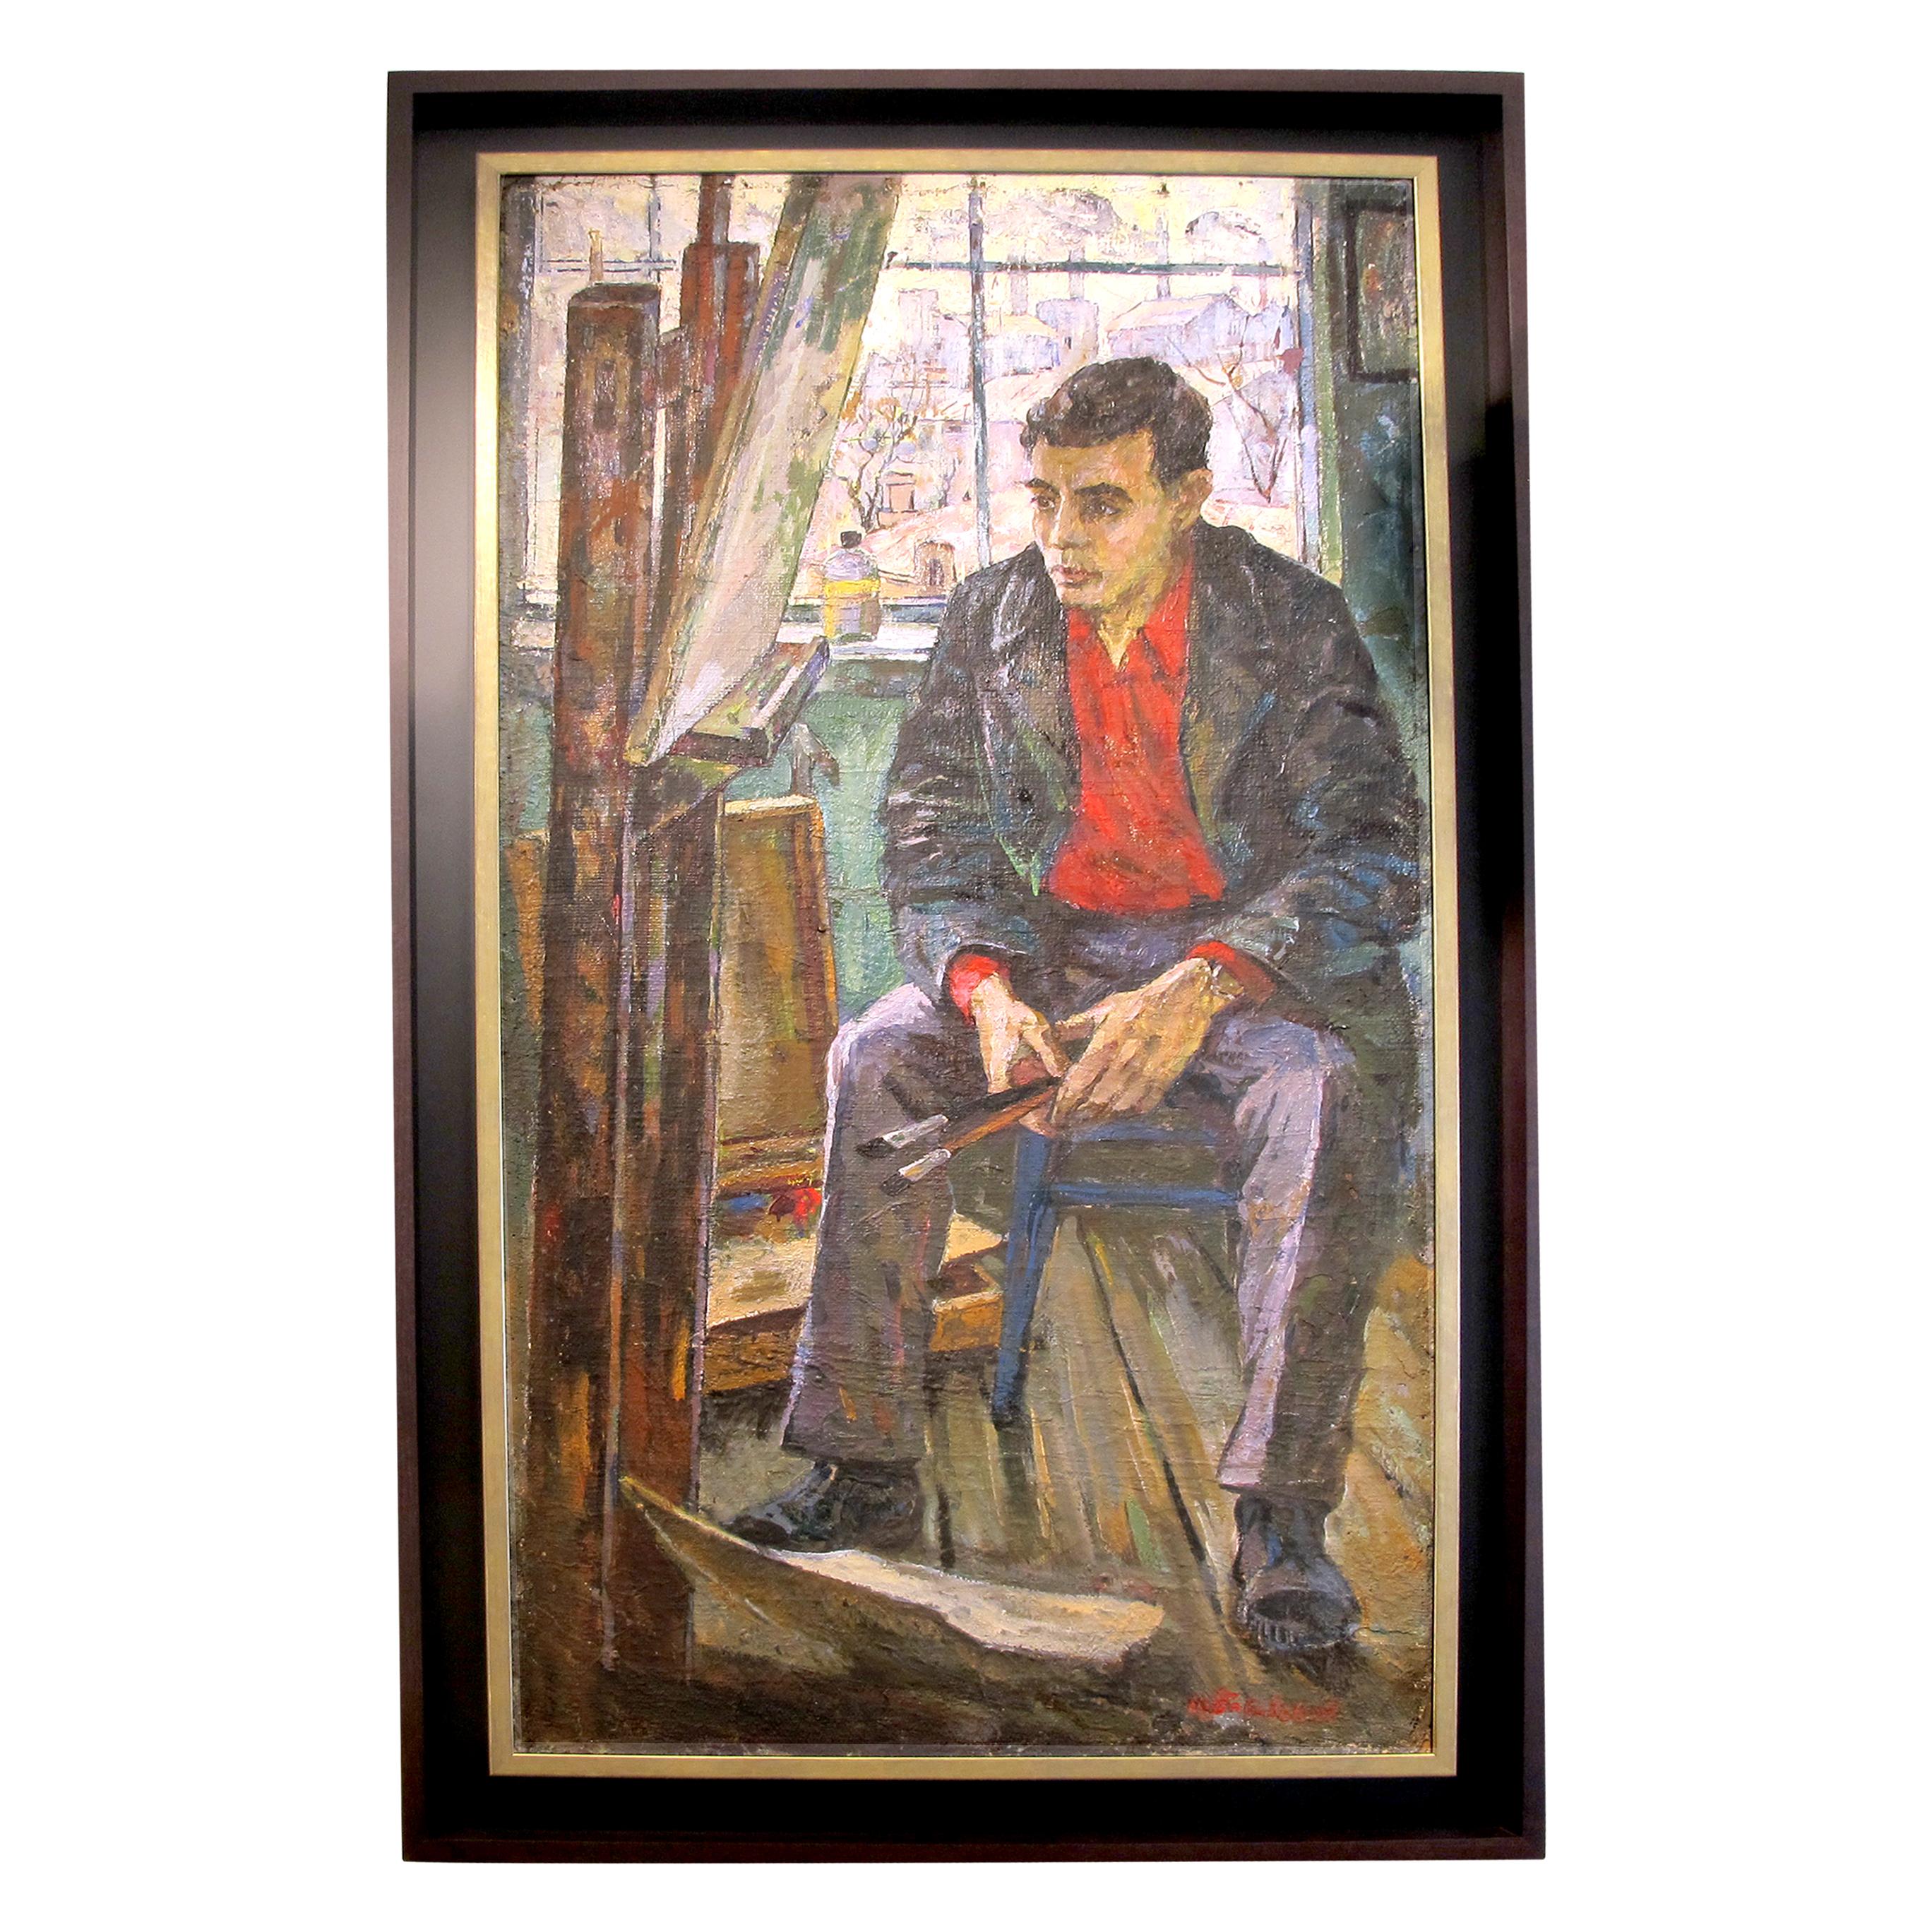 Le point central de la peinture est l'artiste lui-même, assis en toute confiance devant son Chevalet - un chevalet en bois emblématique - alors qu'il travaille avec diligence sur un nouveau chef-d'œuvre. Vêtue d'une chemise d'un rouge éclatant, la